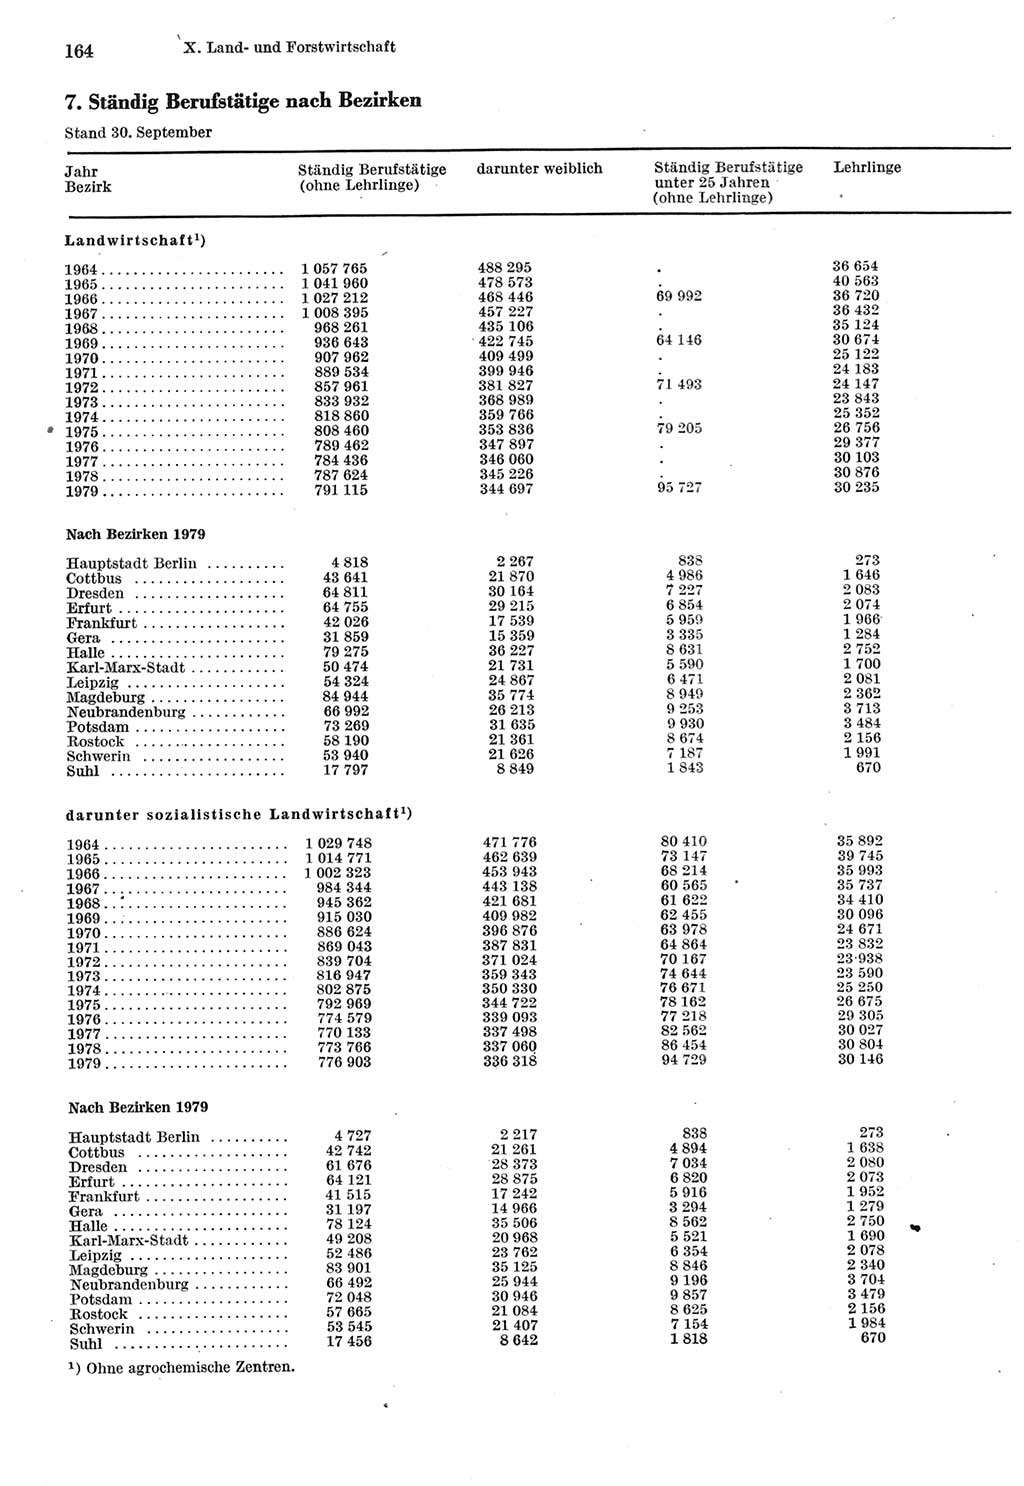 Statistisches Jahrbuch der Deutschen Demokratischen Republik (DDR) 1980, Seite 164 (Stat. Jb. DDR 1980, S. 164)